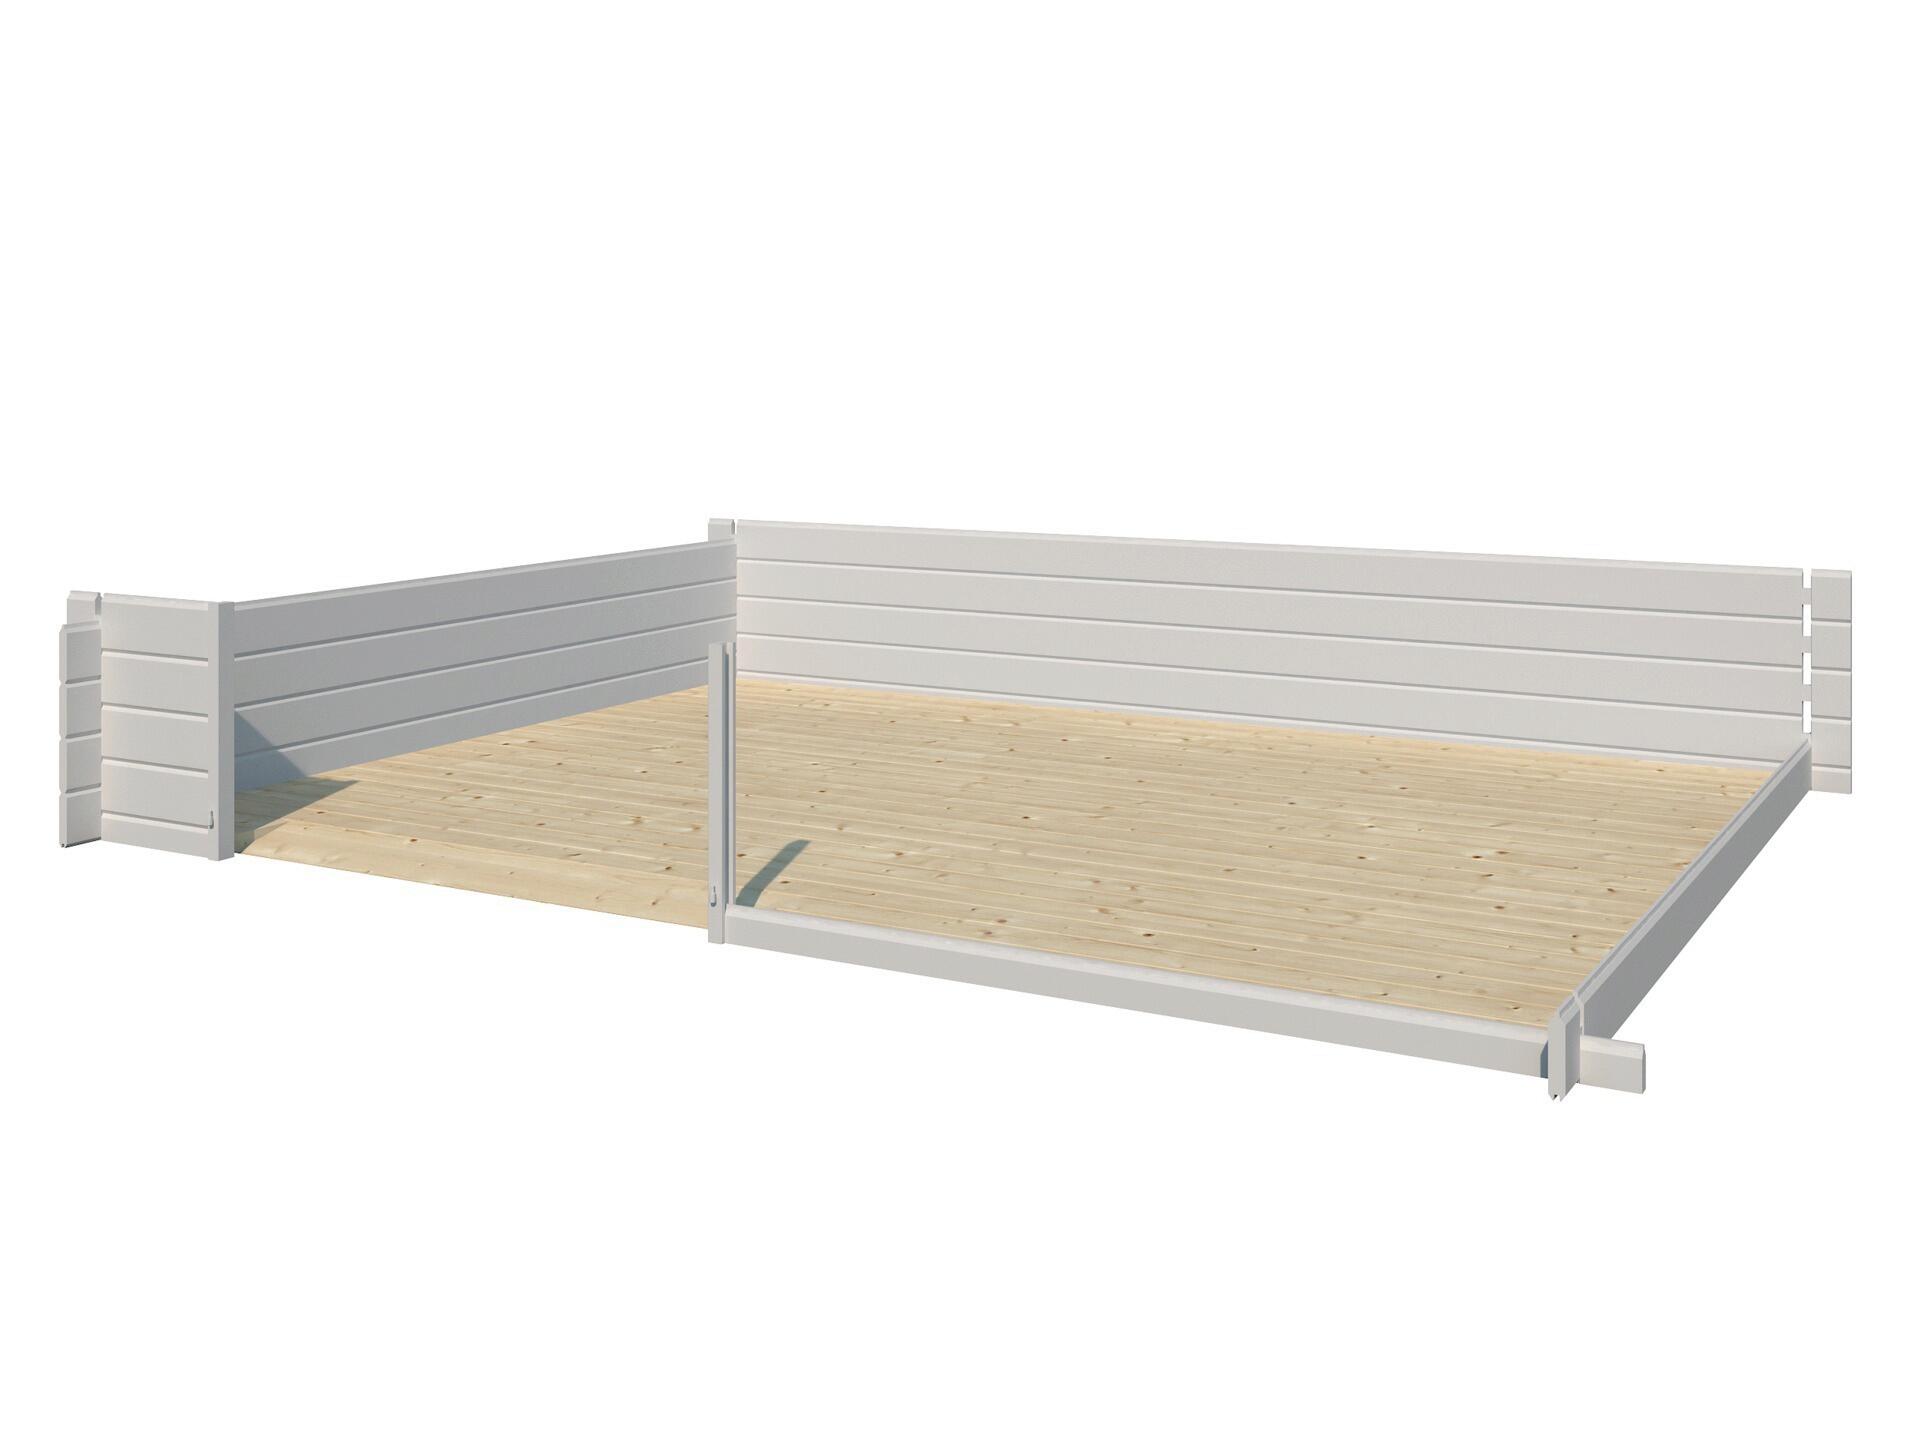 Gardenas plancher pour Davos XL 415x385x248 cm